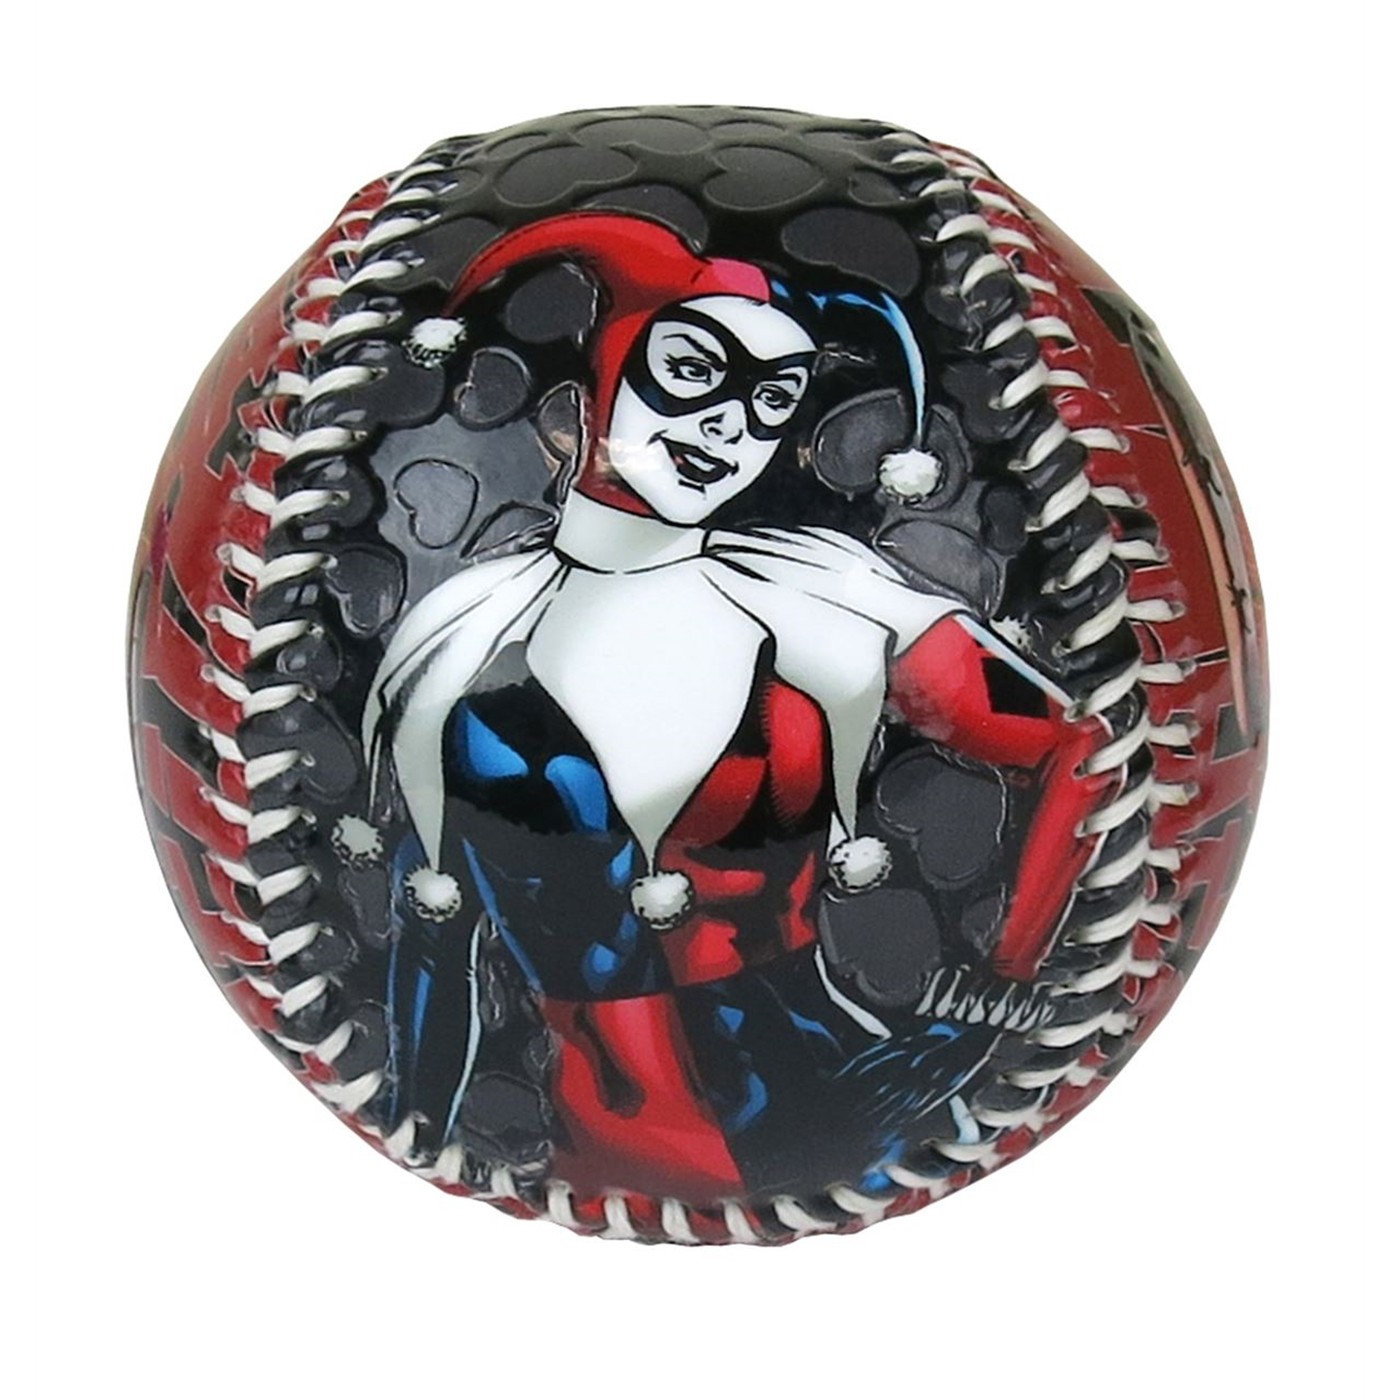 Harley Quinn Image Youth Baseball